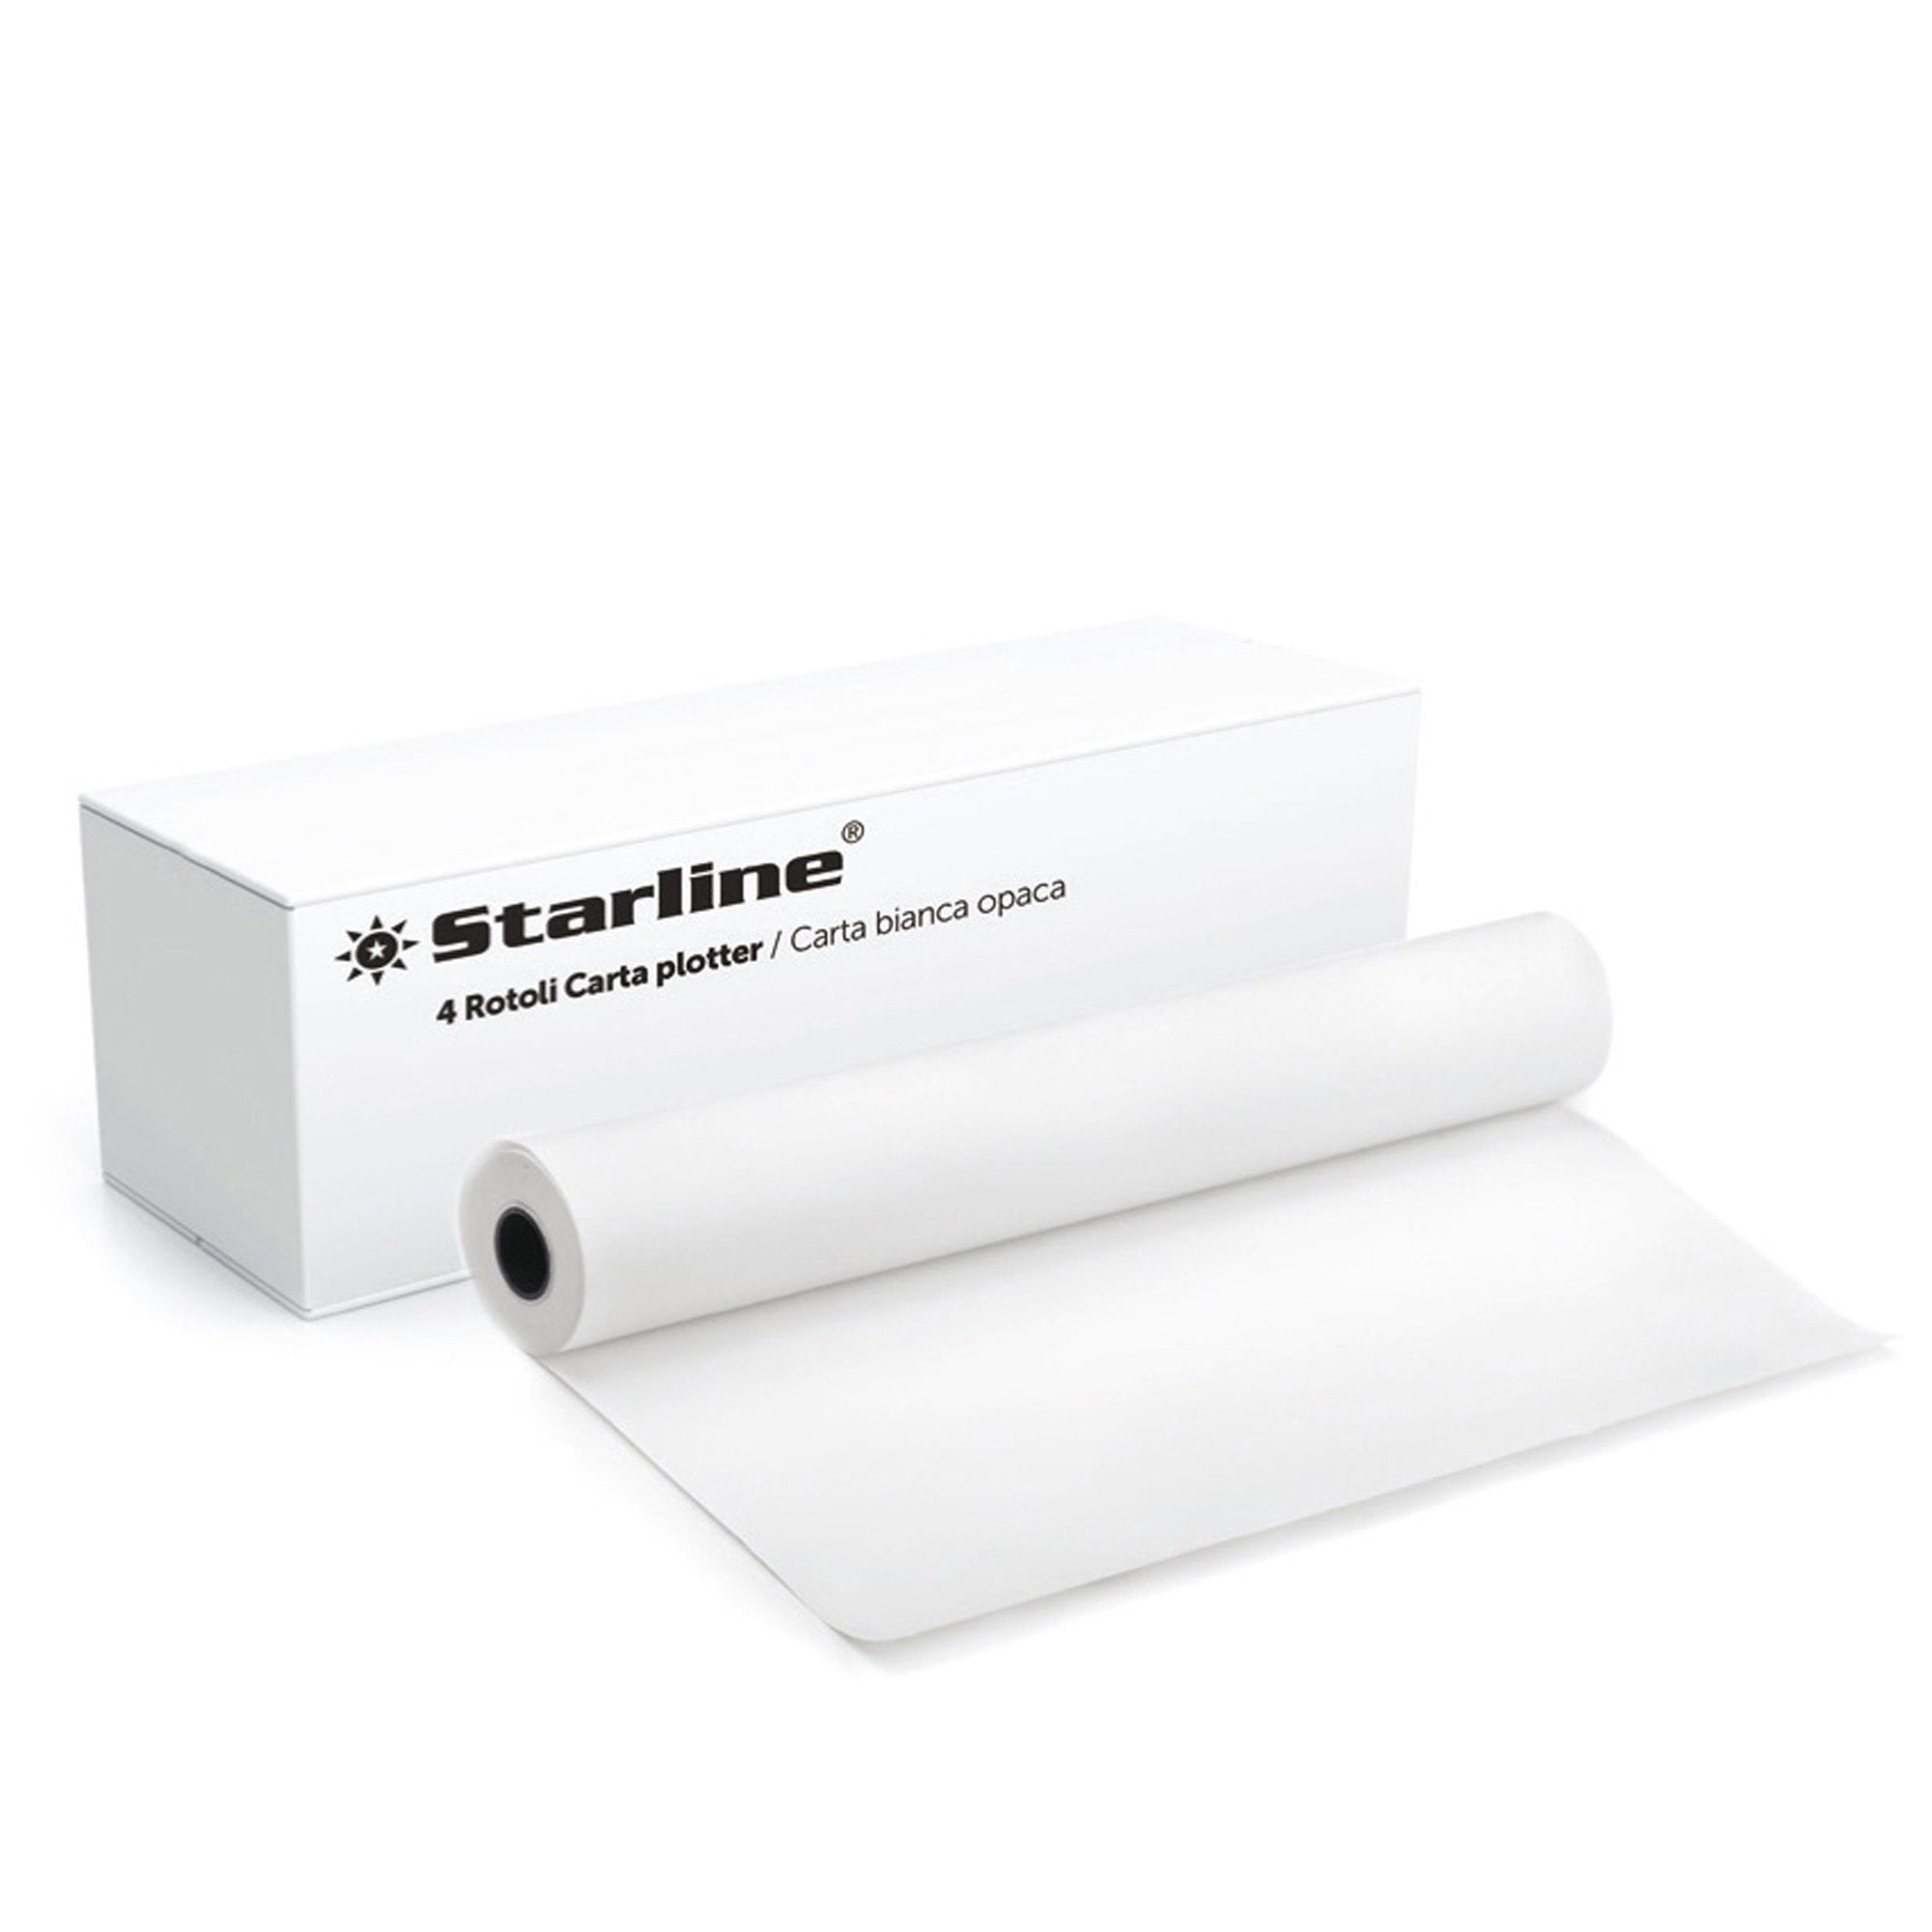 starline-carta-plotter-625mm-x-50m-80gr-inkjet